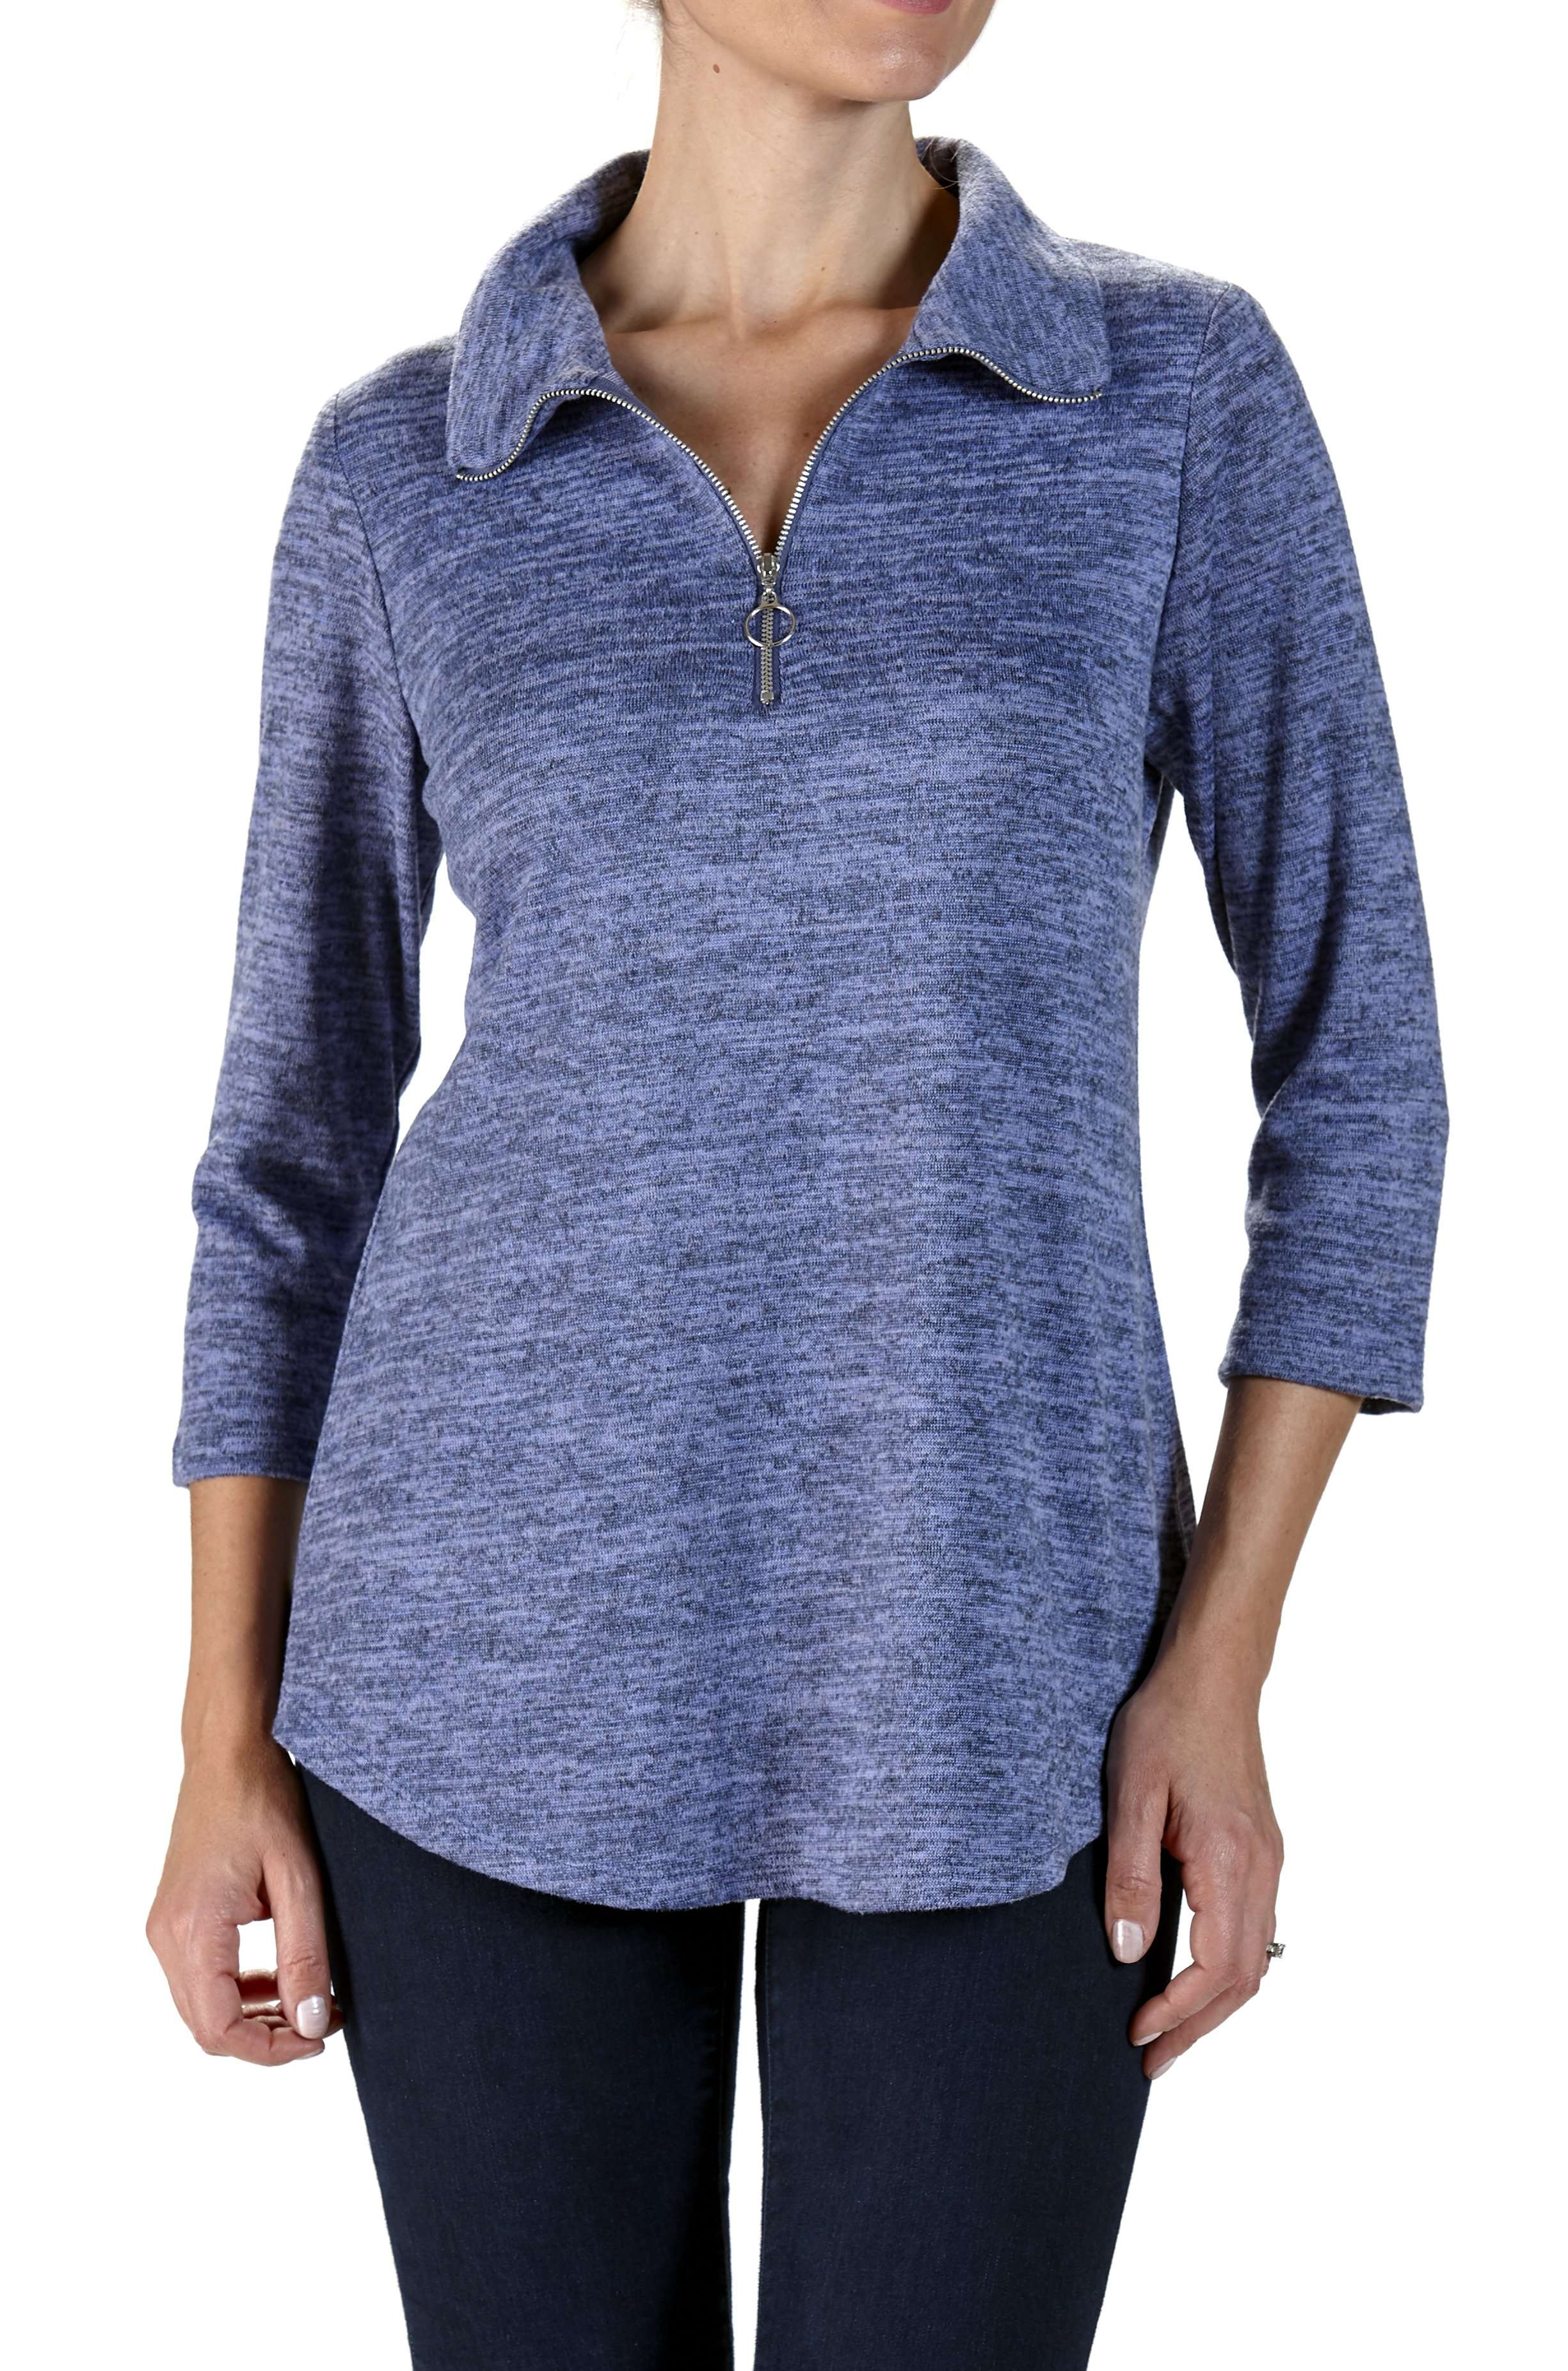 Women's Denim Blue Sweater Top - Yvonne Marie